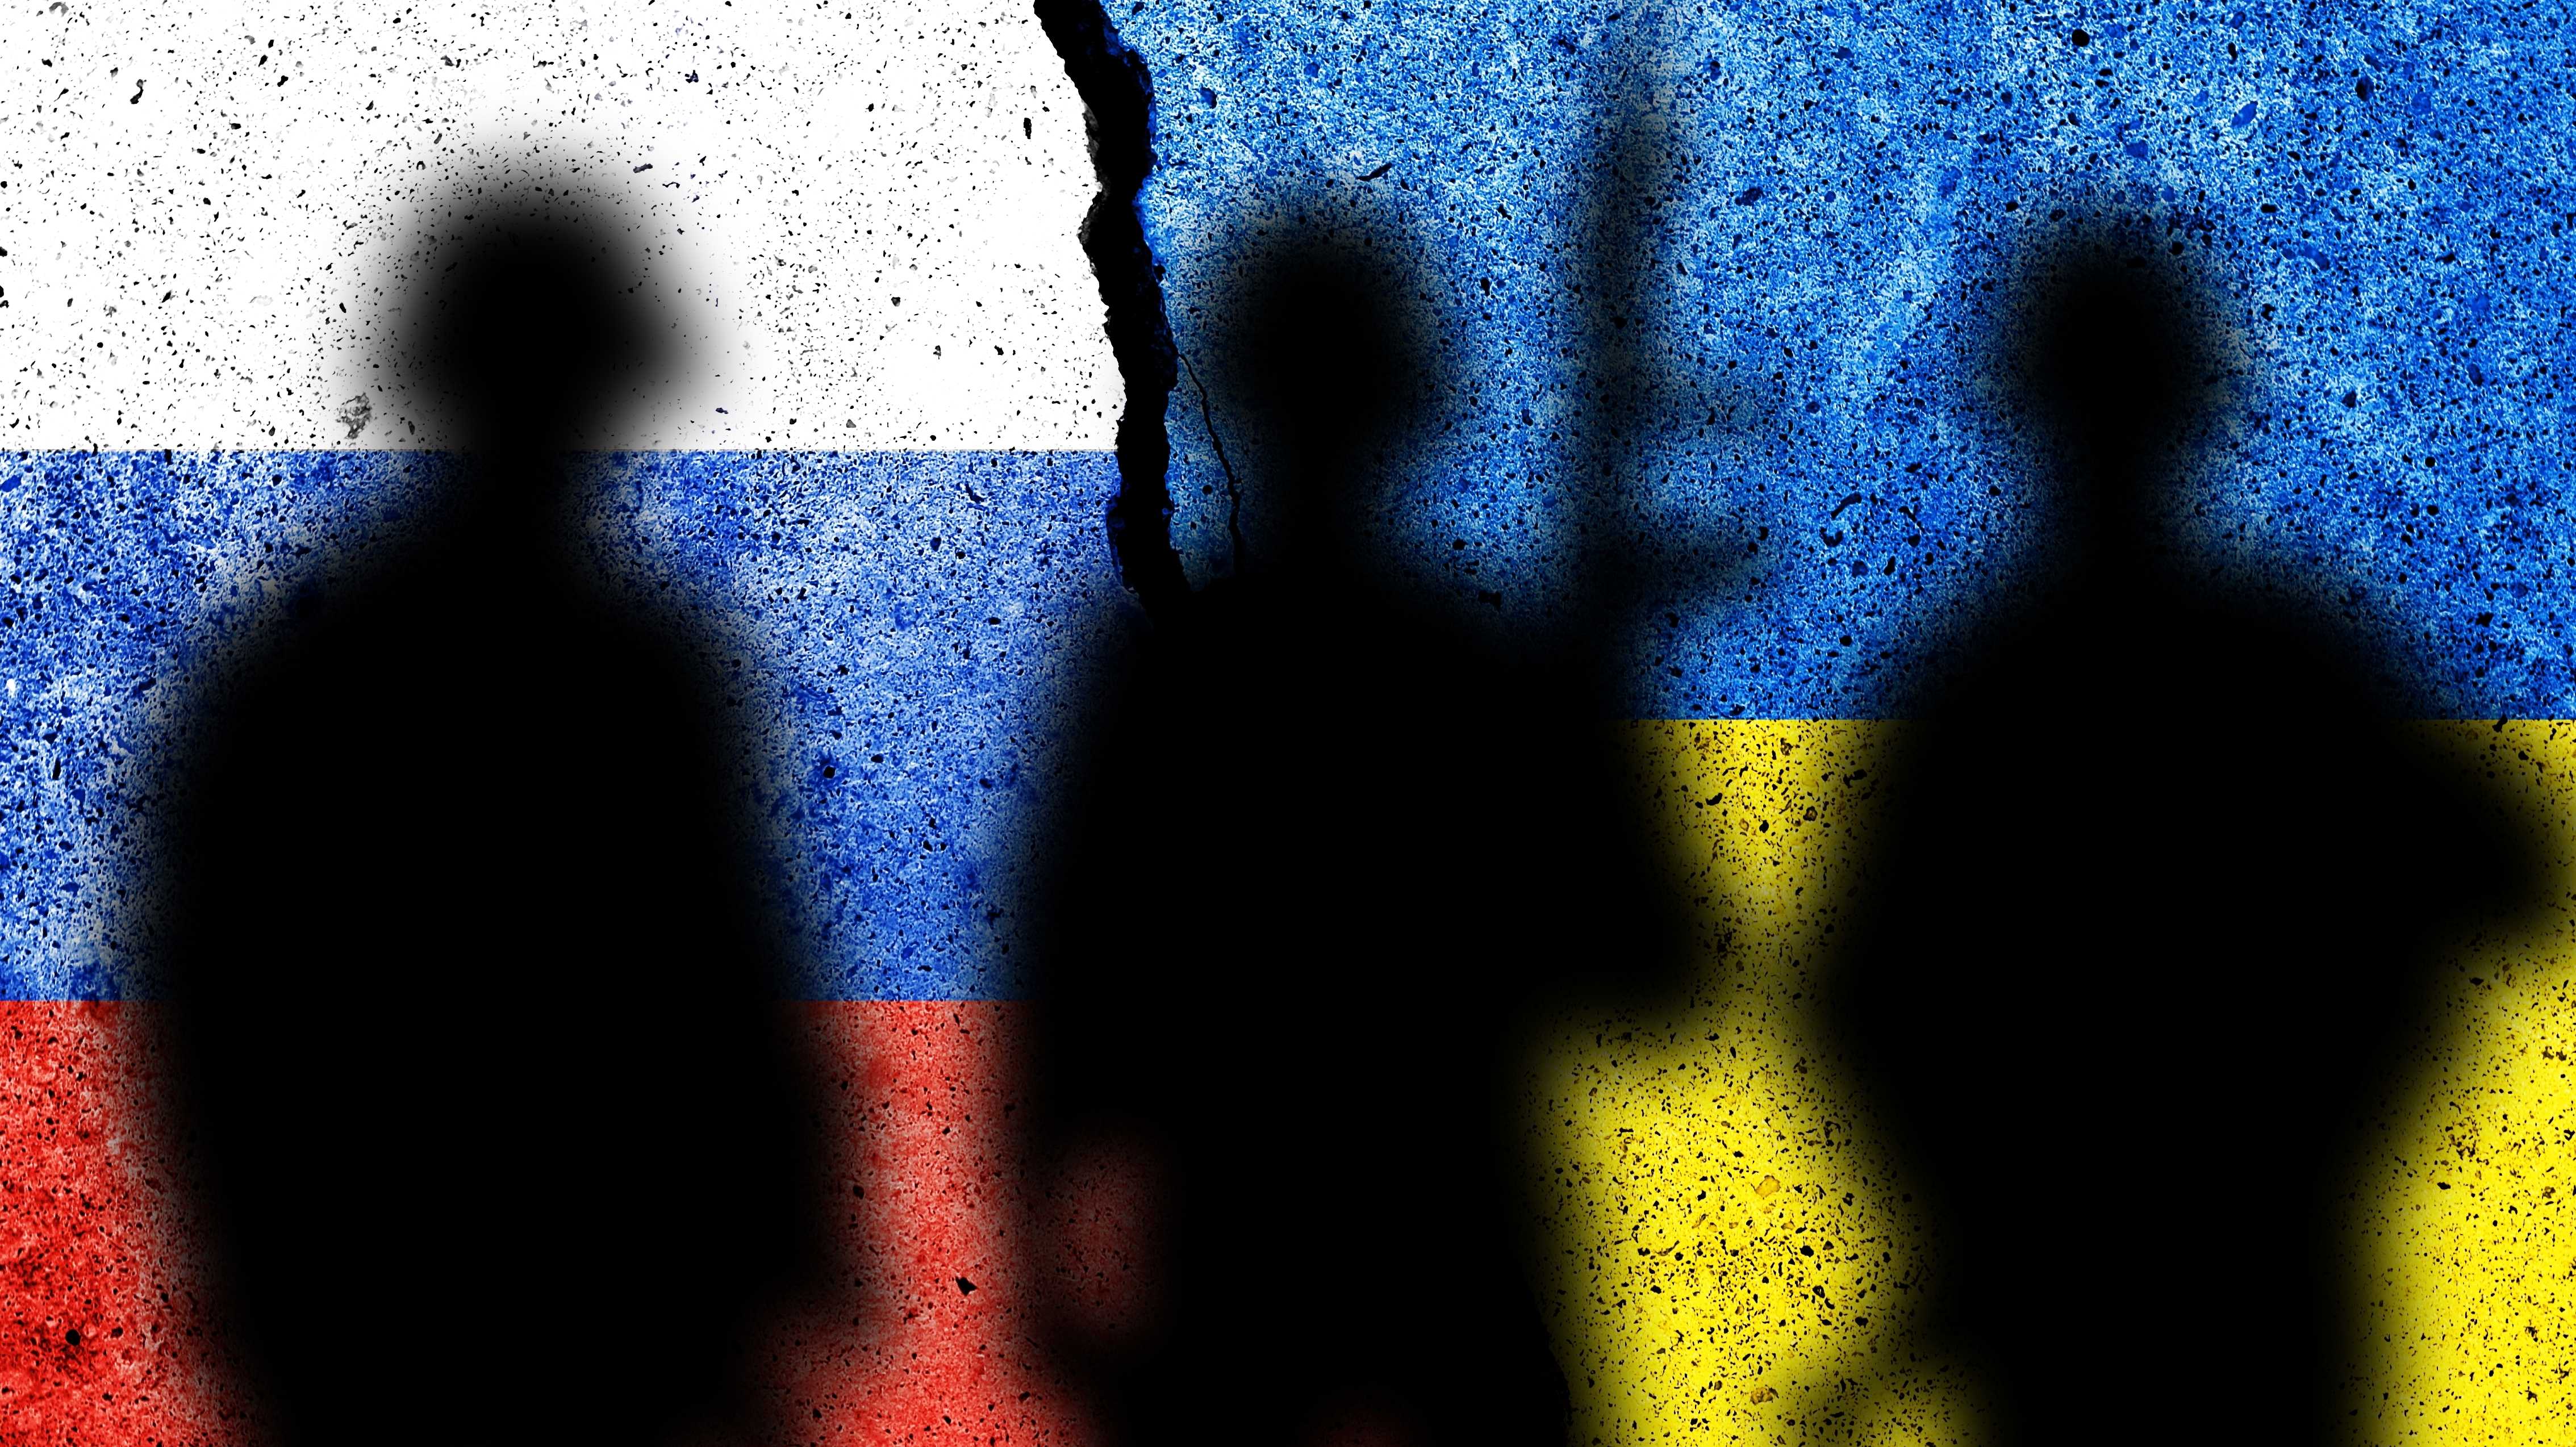 Der Schatten von Soldaten vor dem Hintergrund russischer und ukrainischer Flaggen.